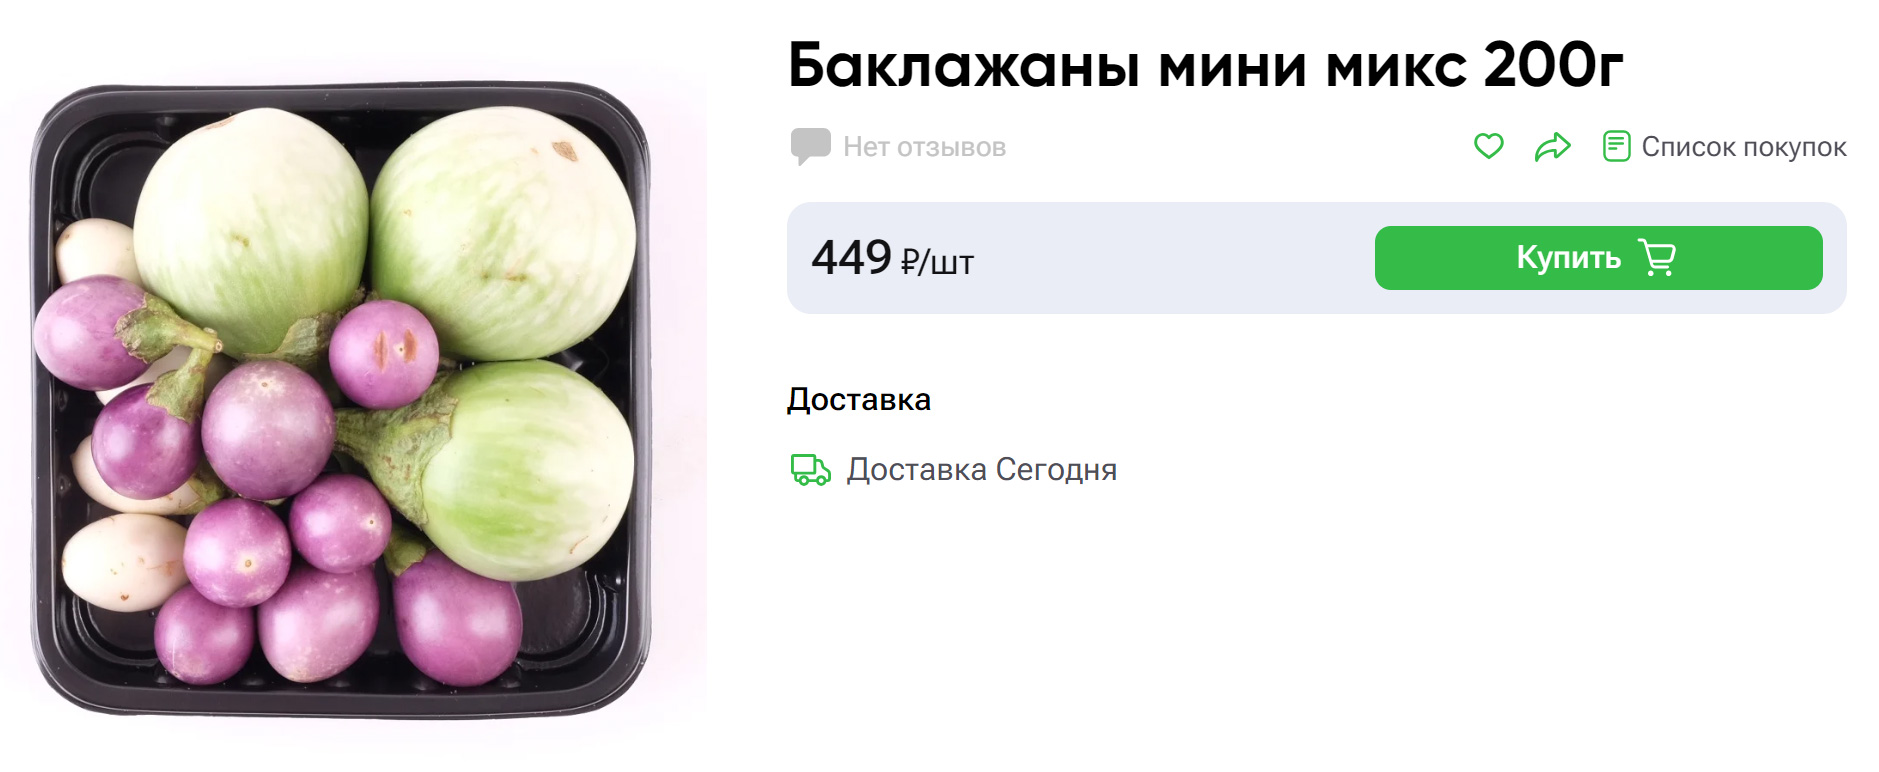 Мини-баклажаны бывают синими, зелеными, белыми в зависимости от сорта. Источник: vprok.ru